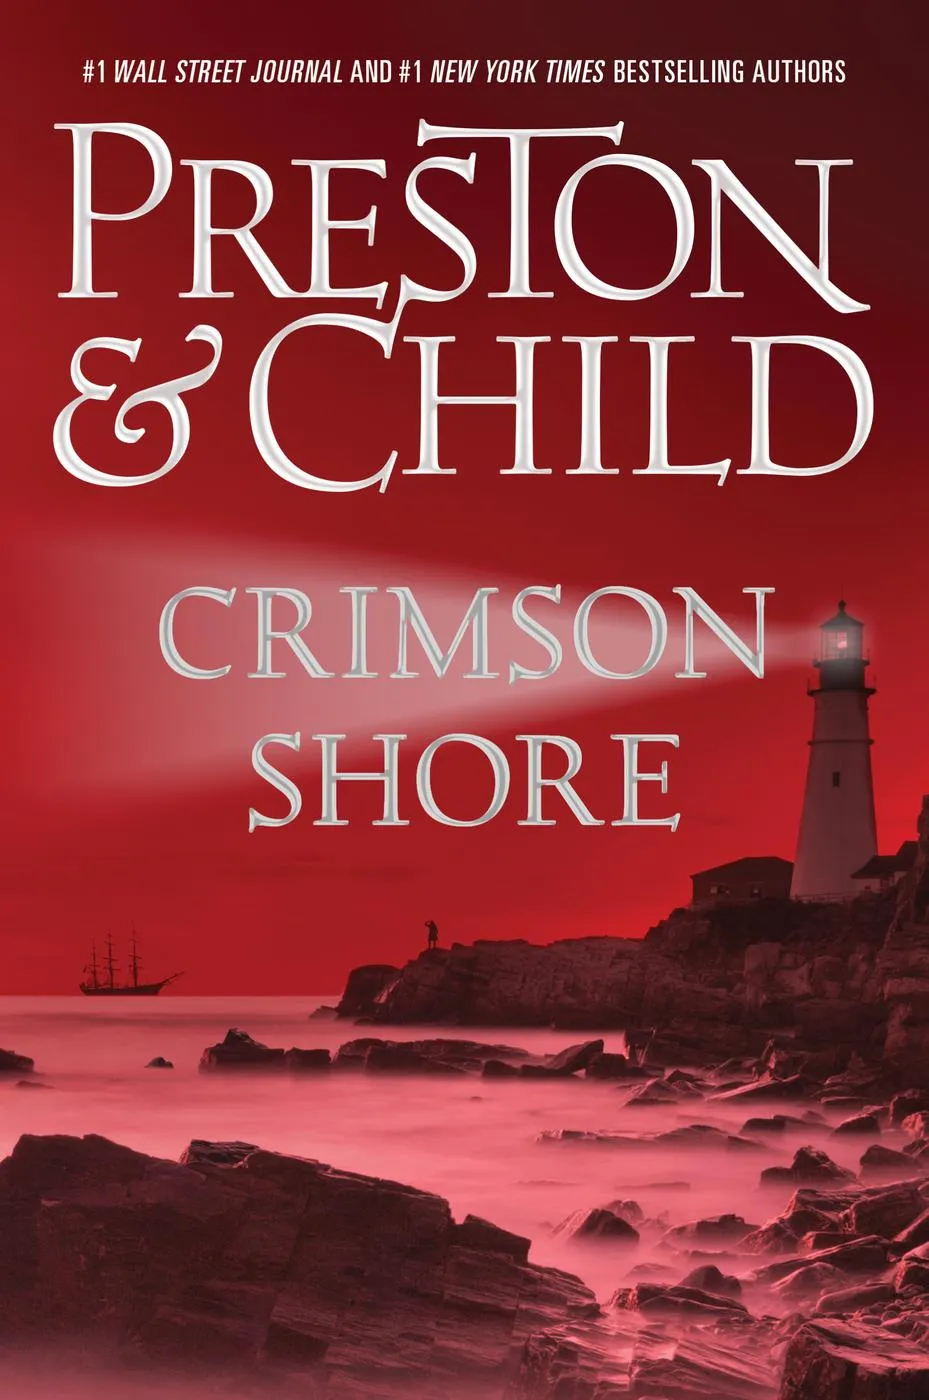 Crimson Shore (Agent Pendergast #15)